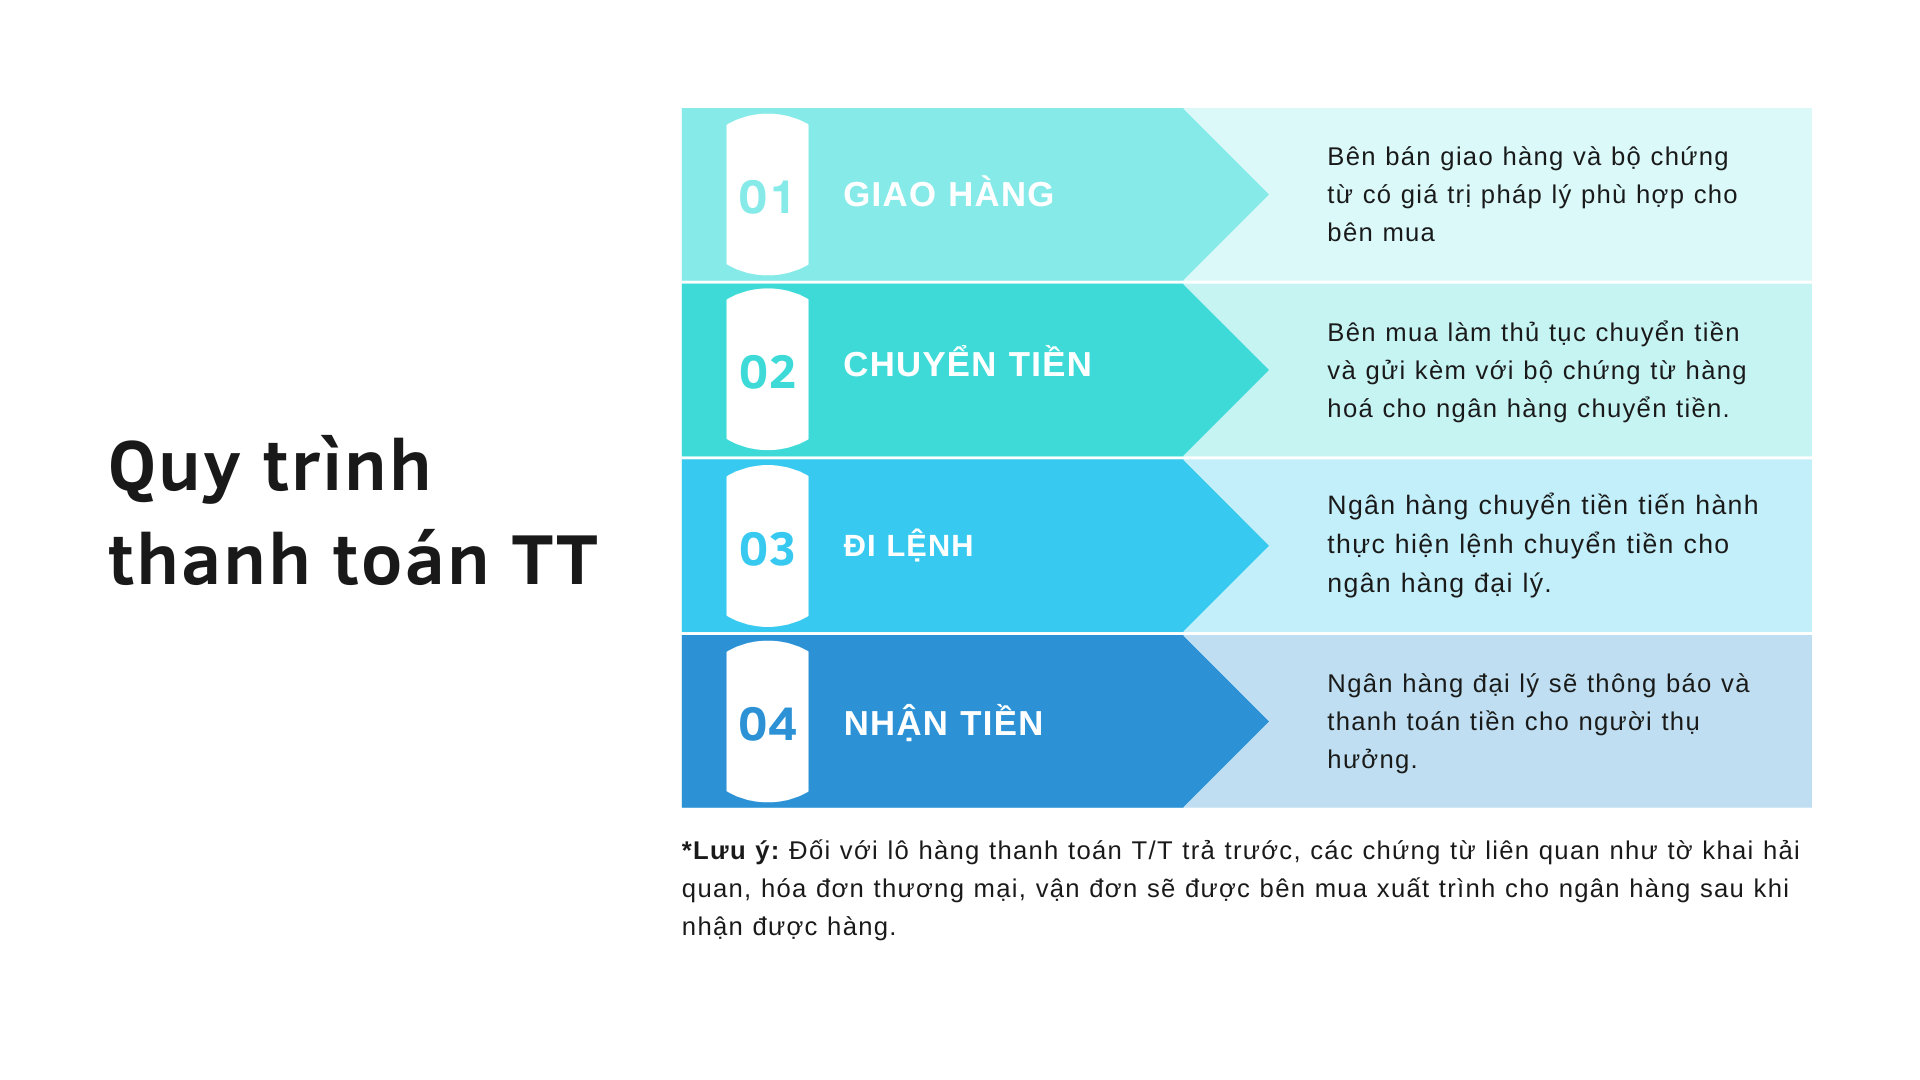 Quy trình thanh toán TT gồm 4 bước: giao hàng, chuyển tiền, đi lệnh, nhận tiền